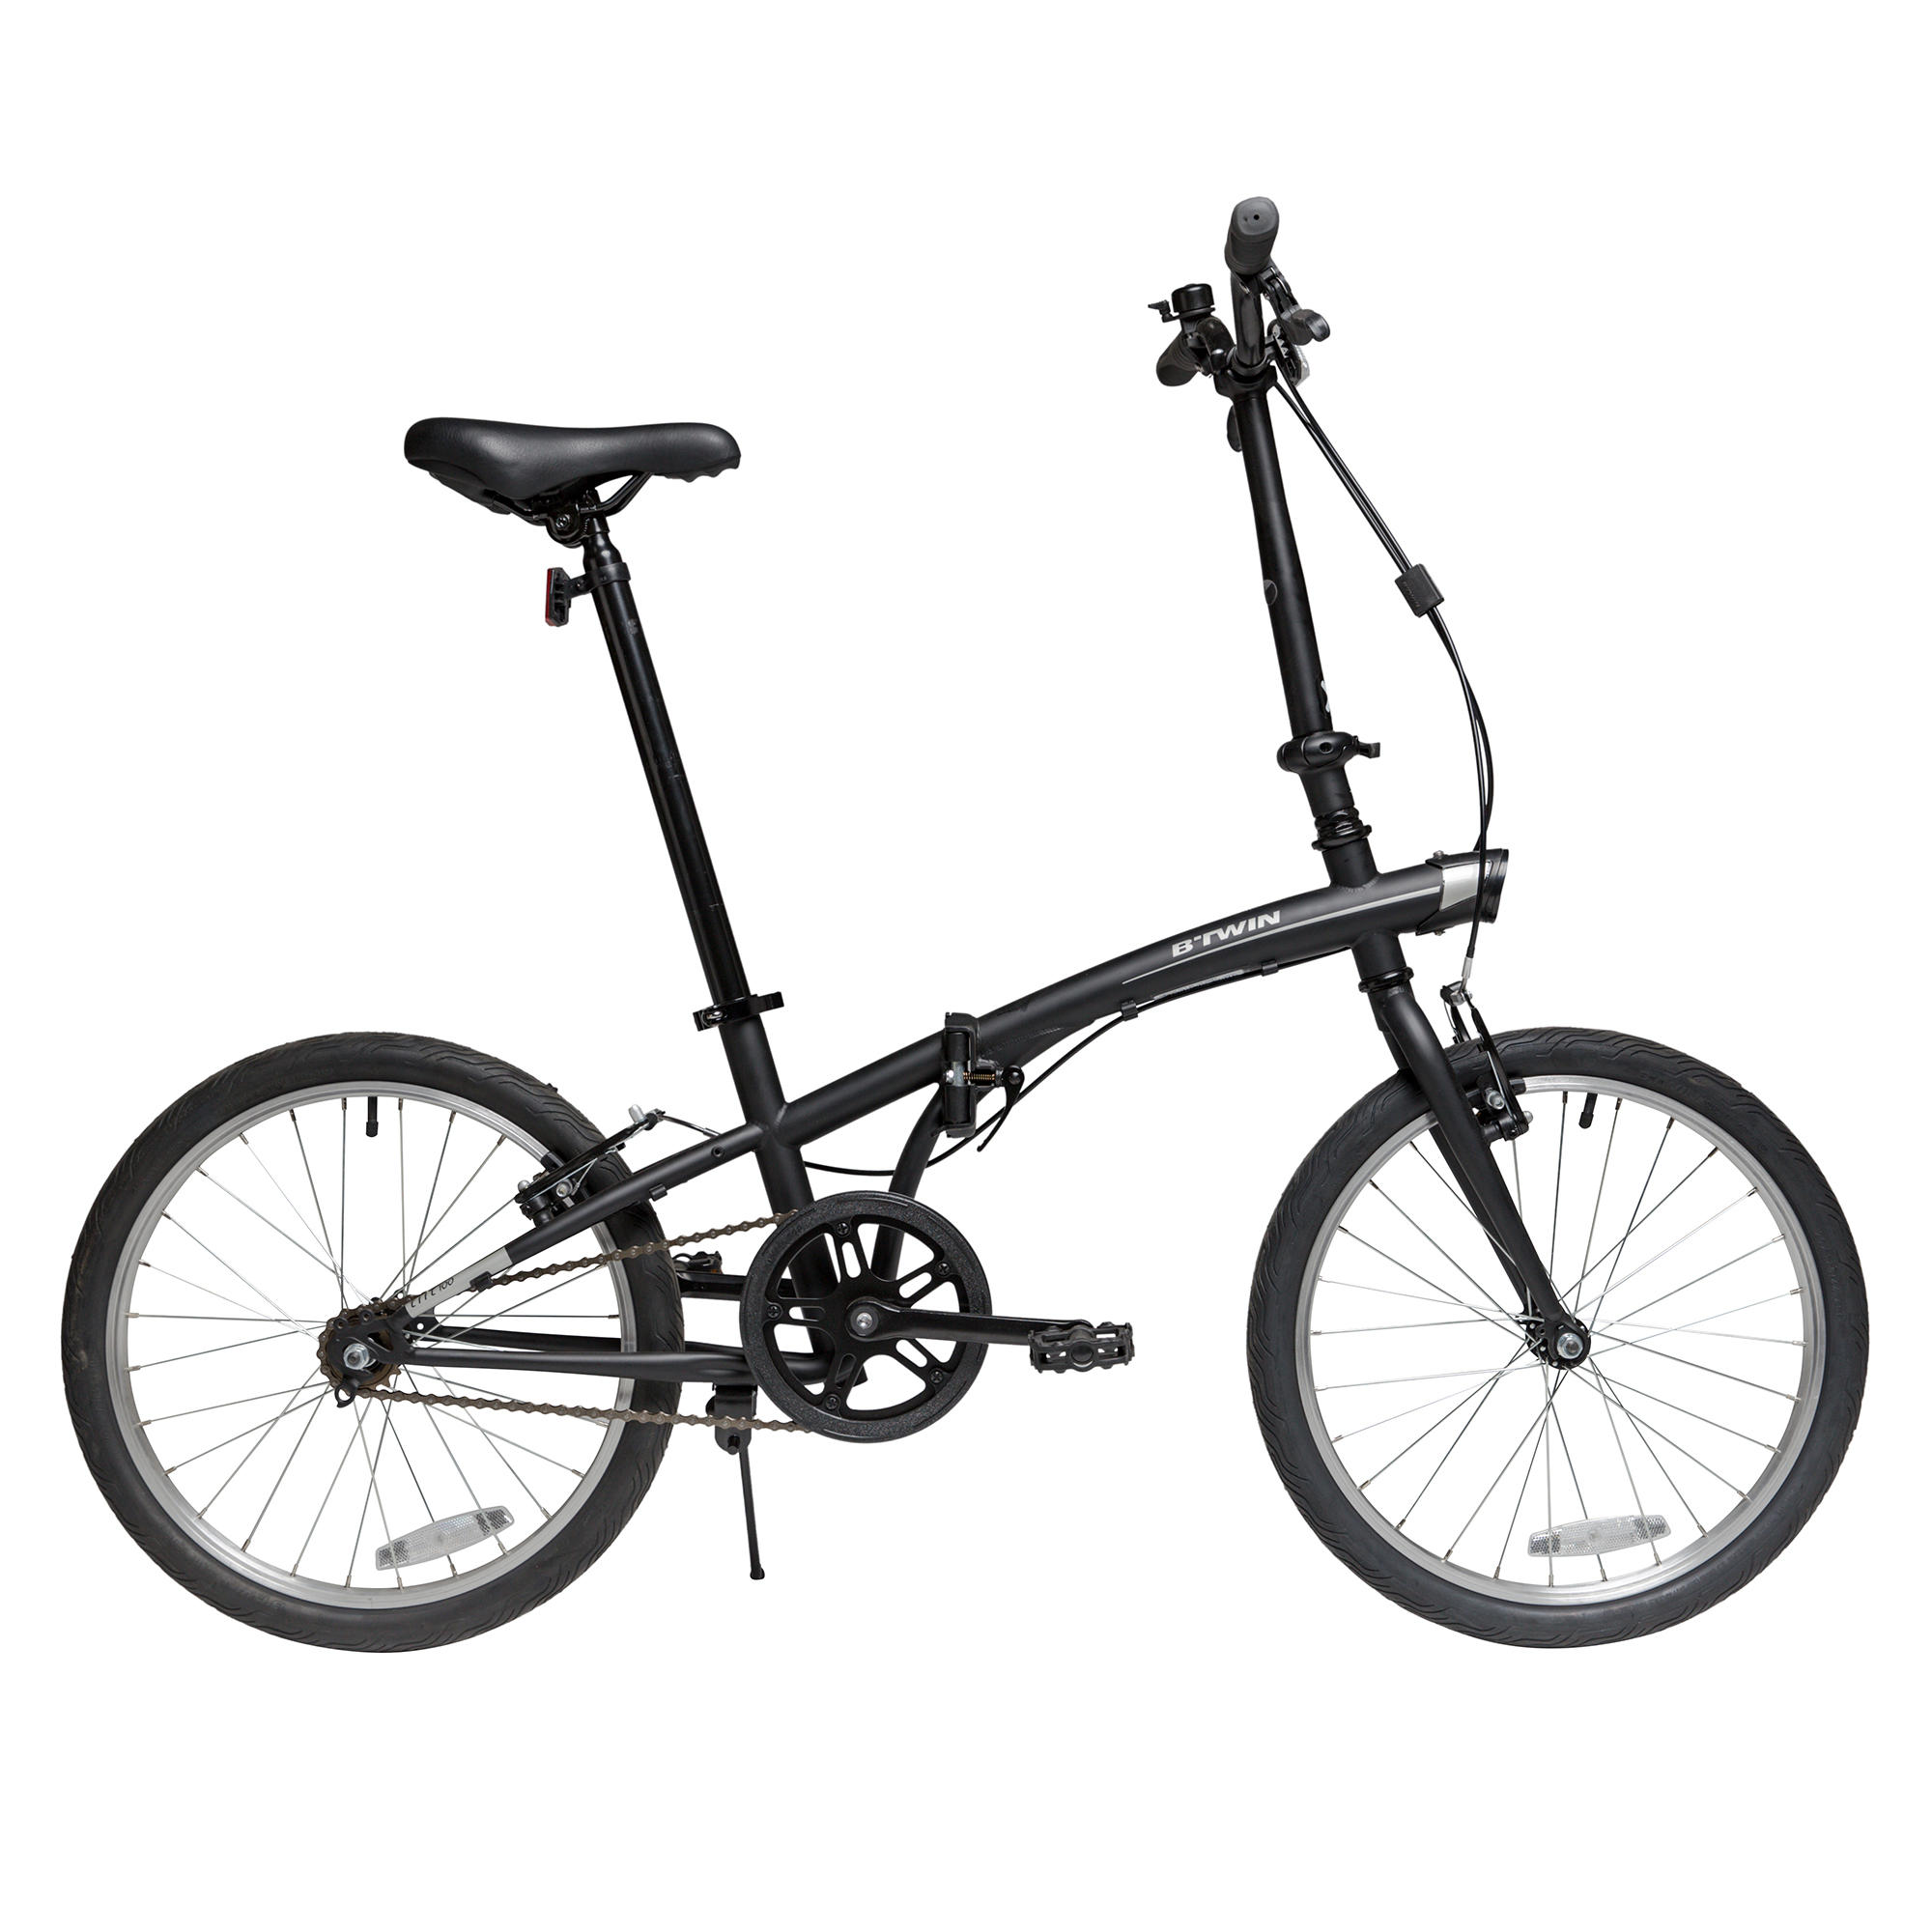 [ส่งฟรี ] จักรยานพับได้ จักรยานผู้ใหญ่ จักรยานออกกำลังกาย 20 นิ้ว 1 speed รุ่น TILT 100 (สีดำ) Folding Bike Folding bicycle size 20